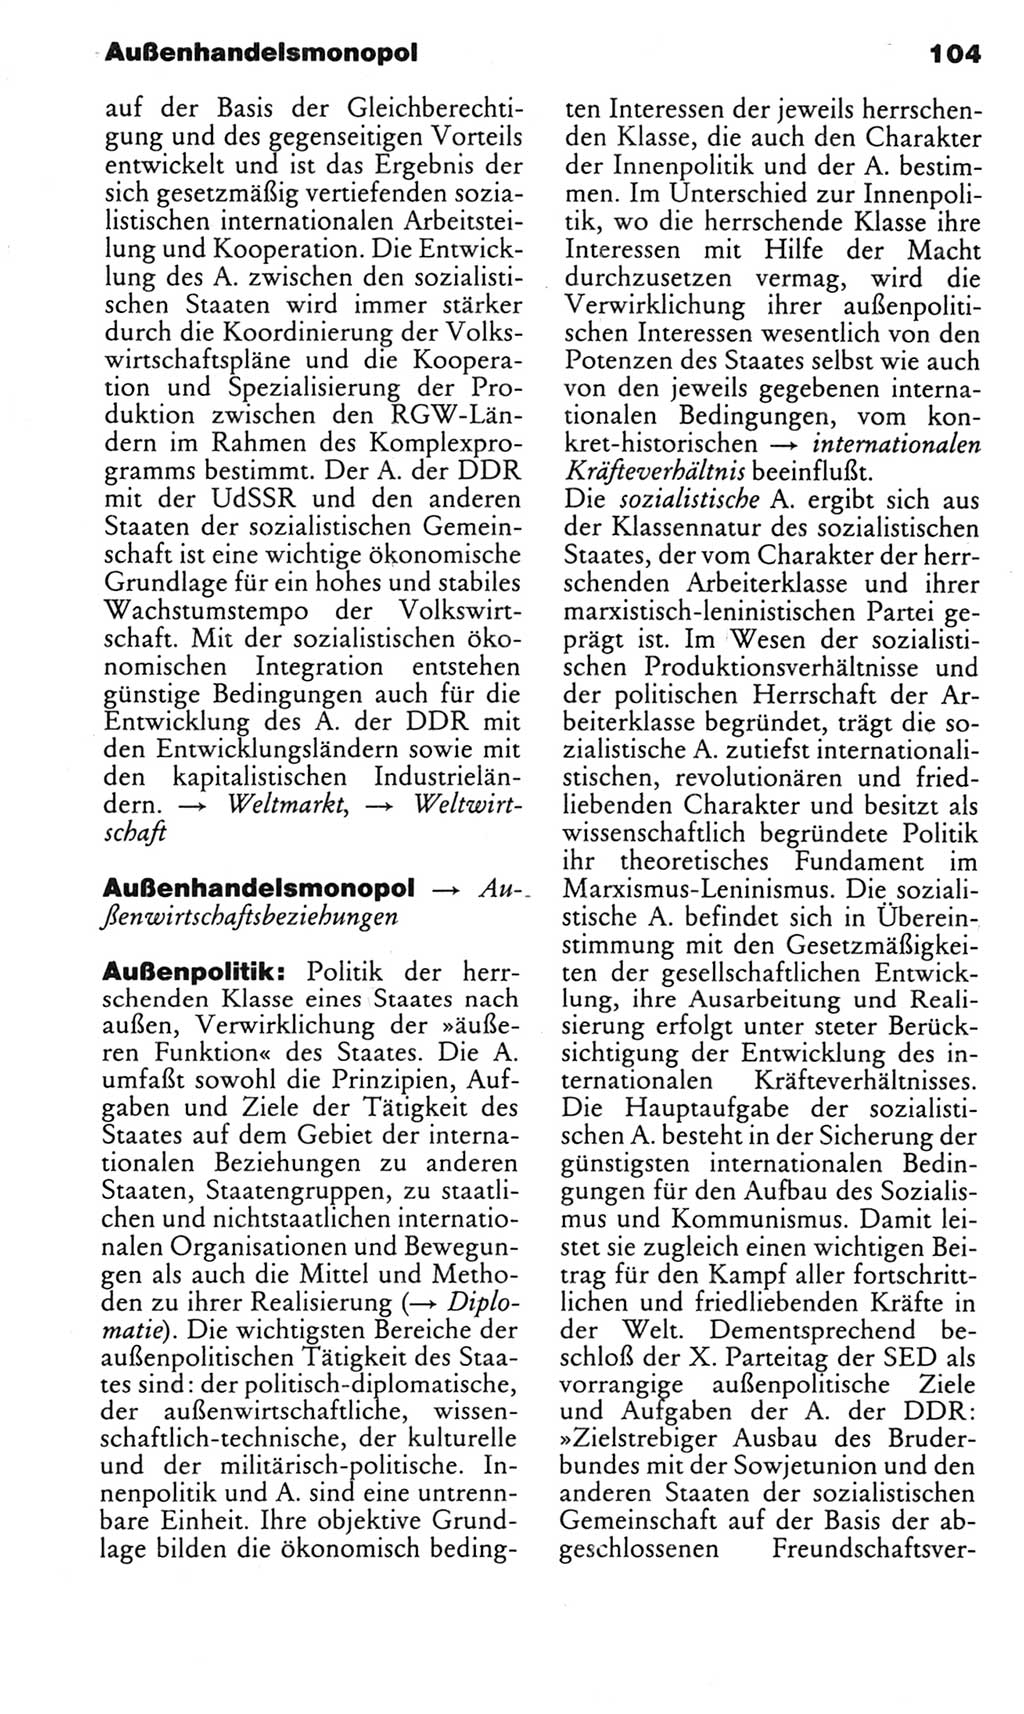 Kleines politisches Wörterbuch [Deutsche Demokratische Republik (DDR)] 1983, Seite 104 (Kl. pol. Wb. DDR 1983, S. 104)